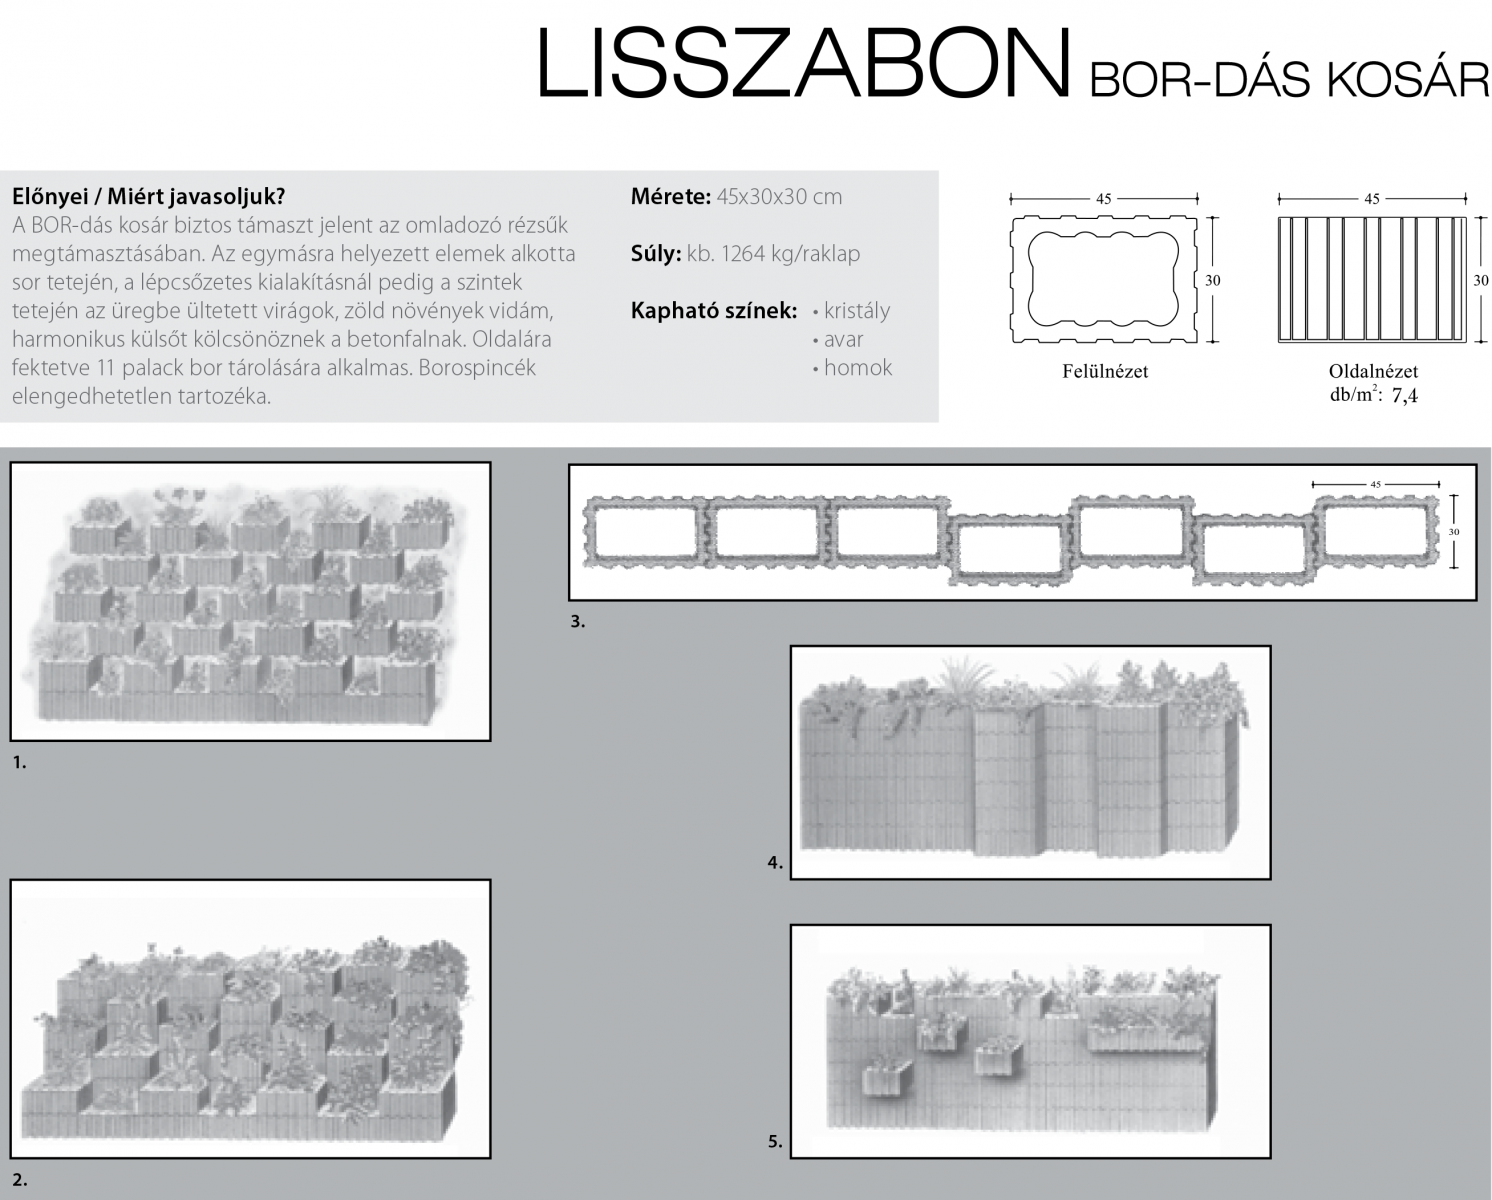 Lisszabon Bor-dás kosár technikai információi